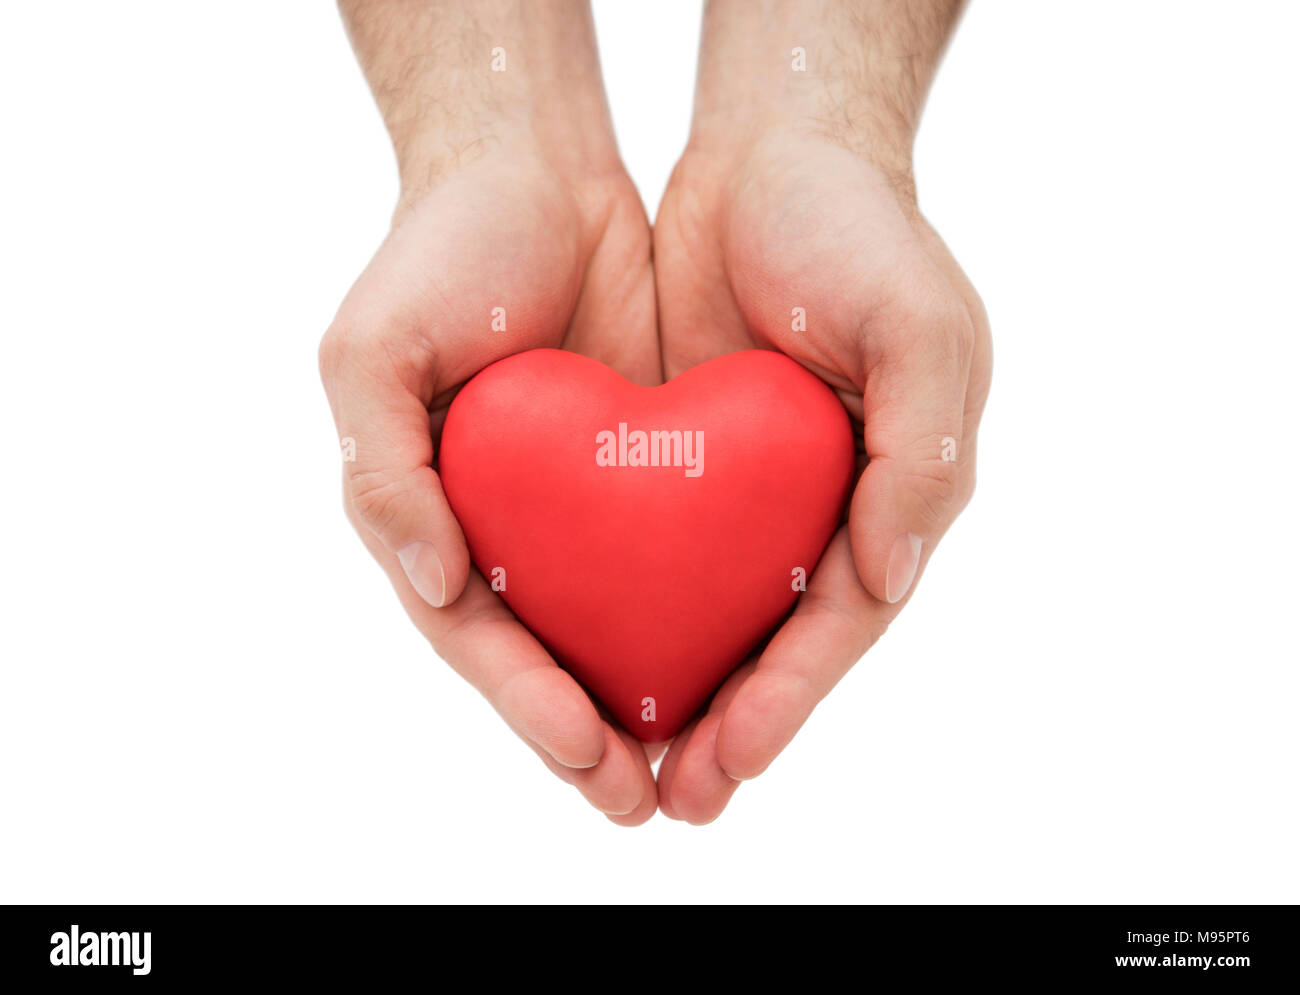 Coeur rouge entre les mains de l'homme. L'assurance-santé ou d'amour concept Banque D'Images